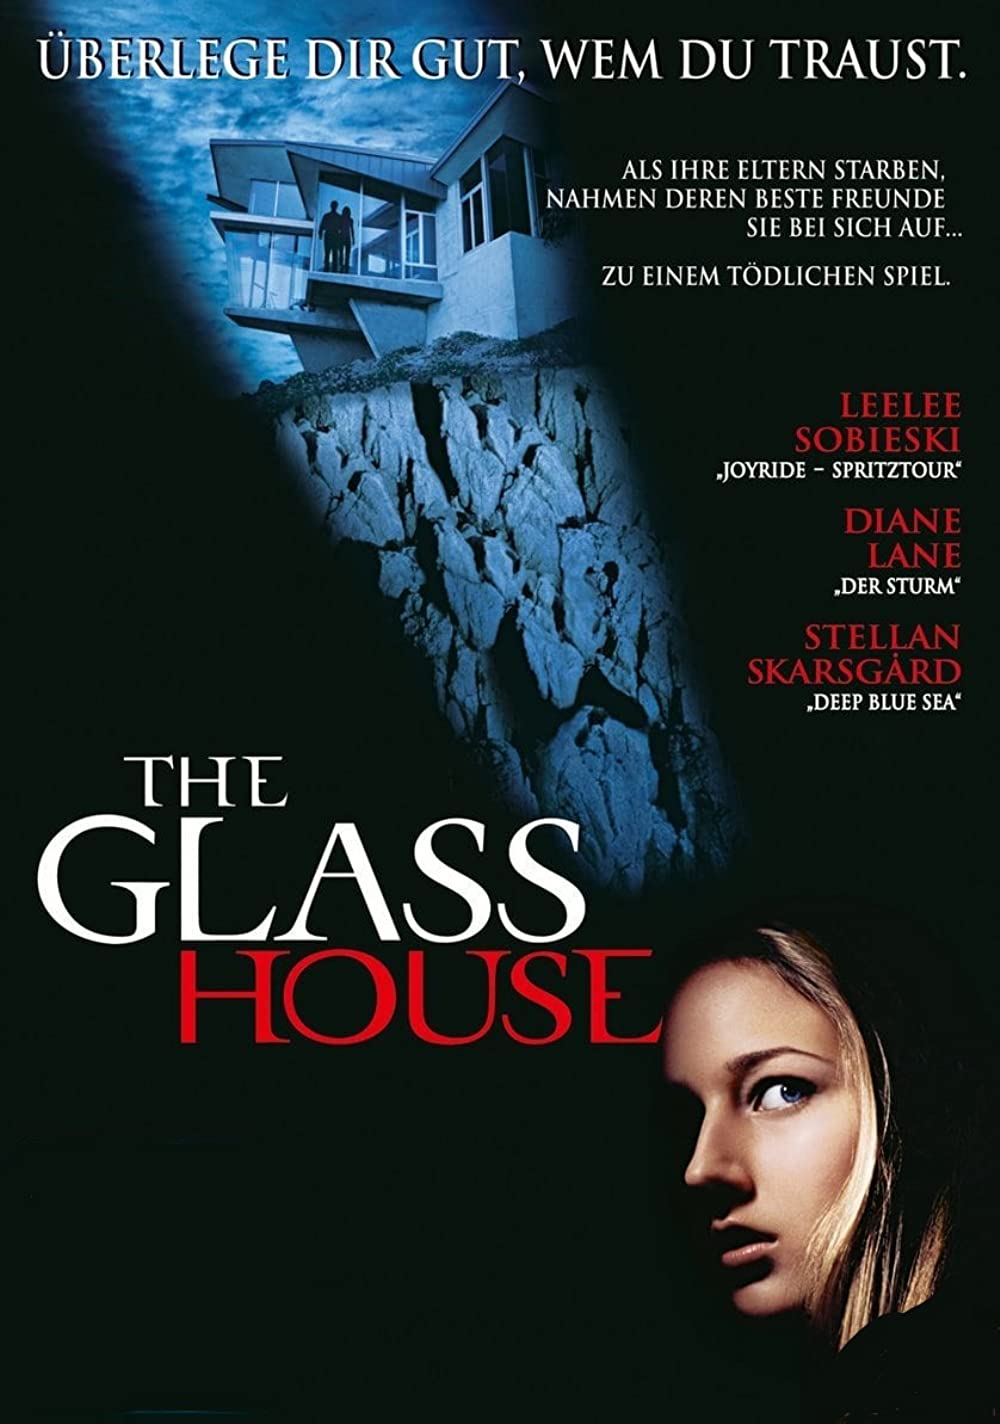 Filmbeschreibung zu The Glass House - Das Glashaus